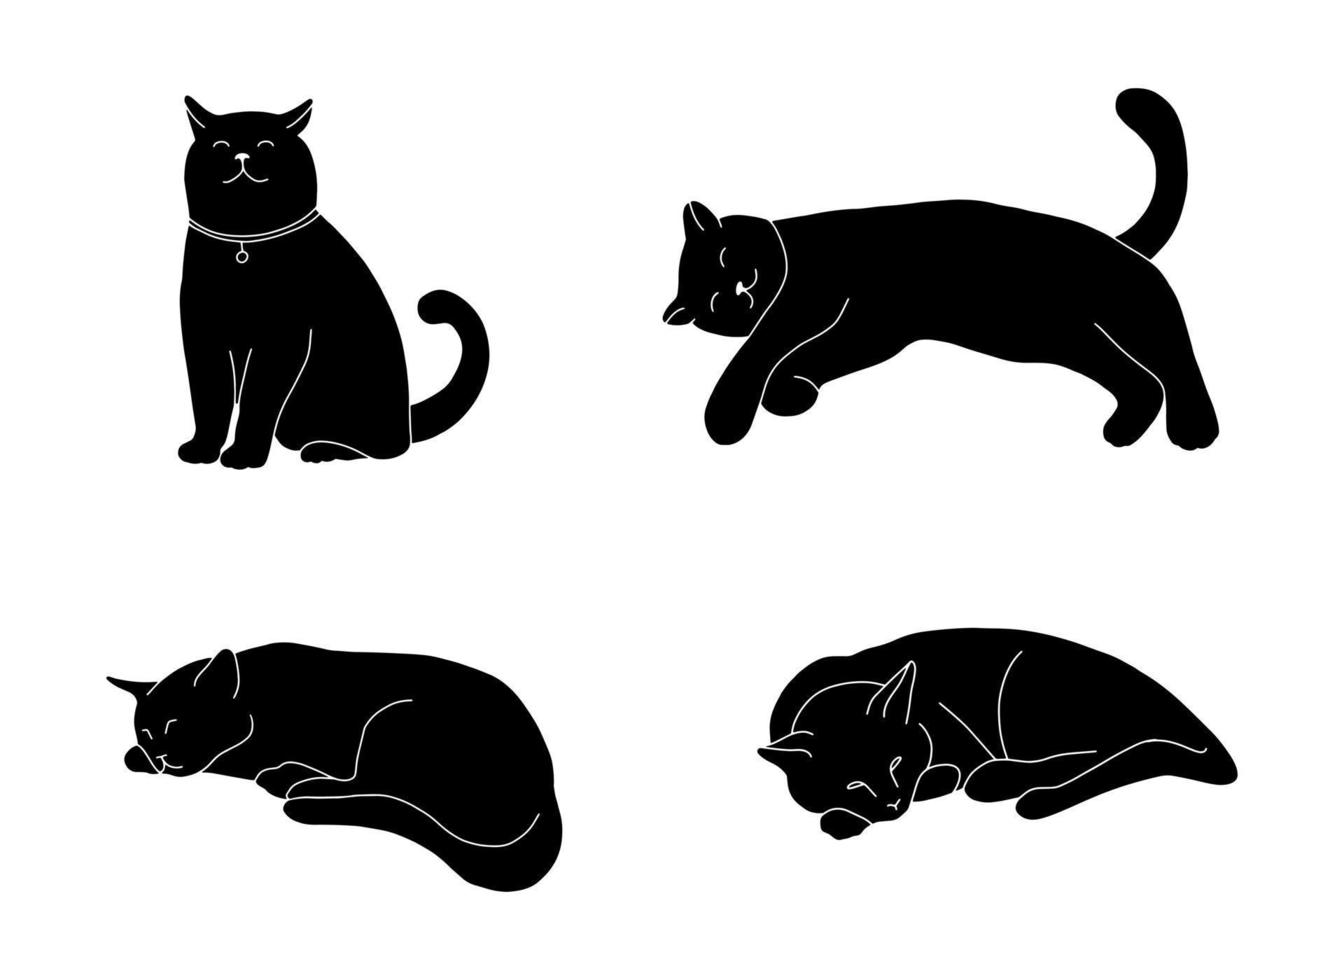 schattige kat pictogrammenset silhouet geïsoleerd op een witte achtergrond. eenvoudige zwarte print met slapende katten in verschillende poses. schets doodle stijl illustratie voor kinderen. vector